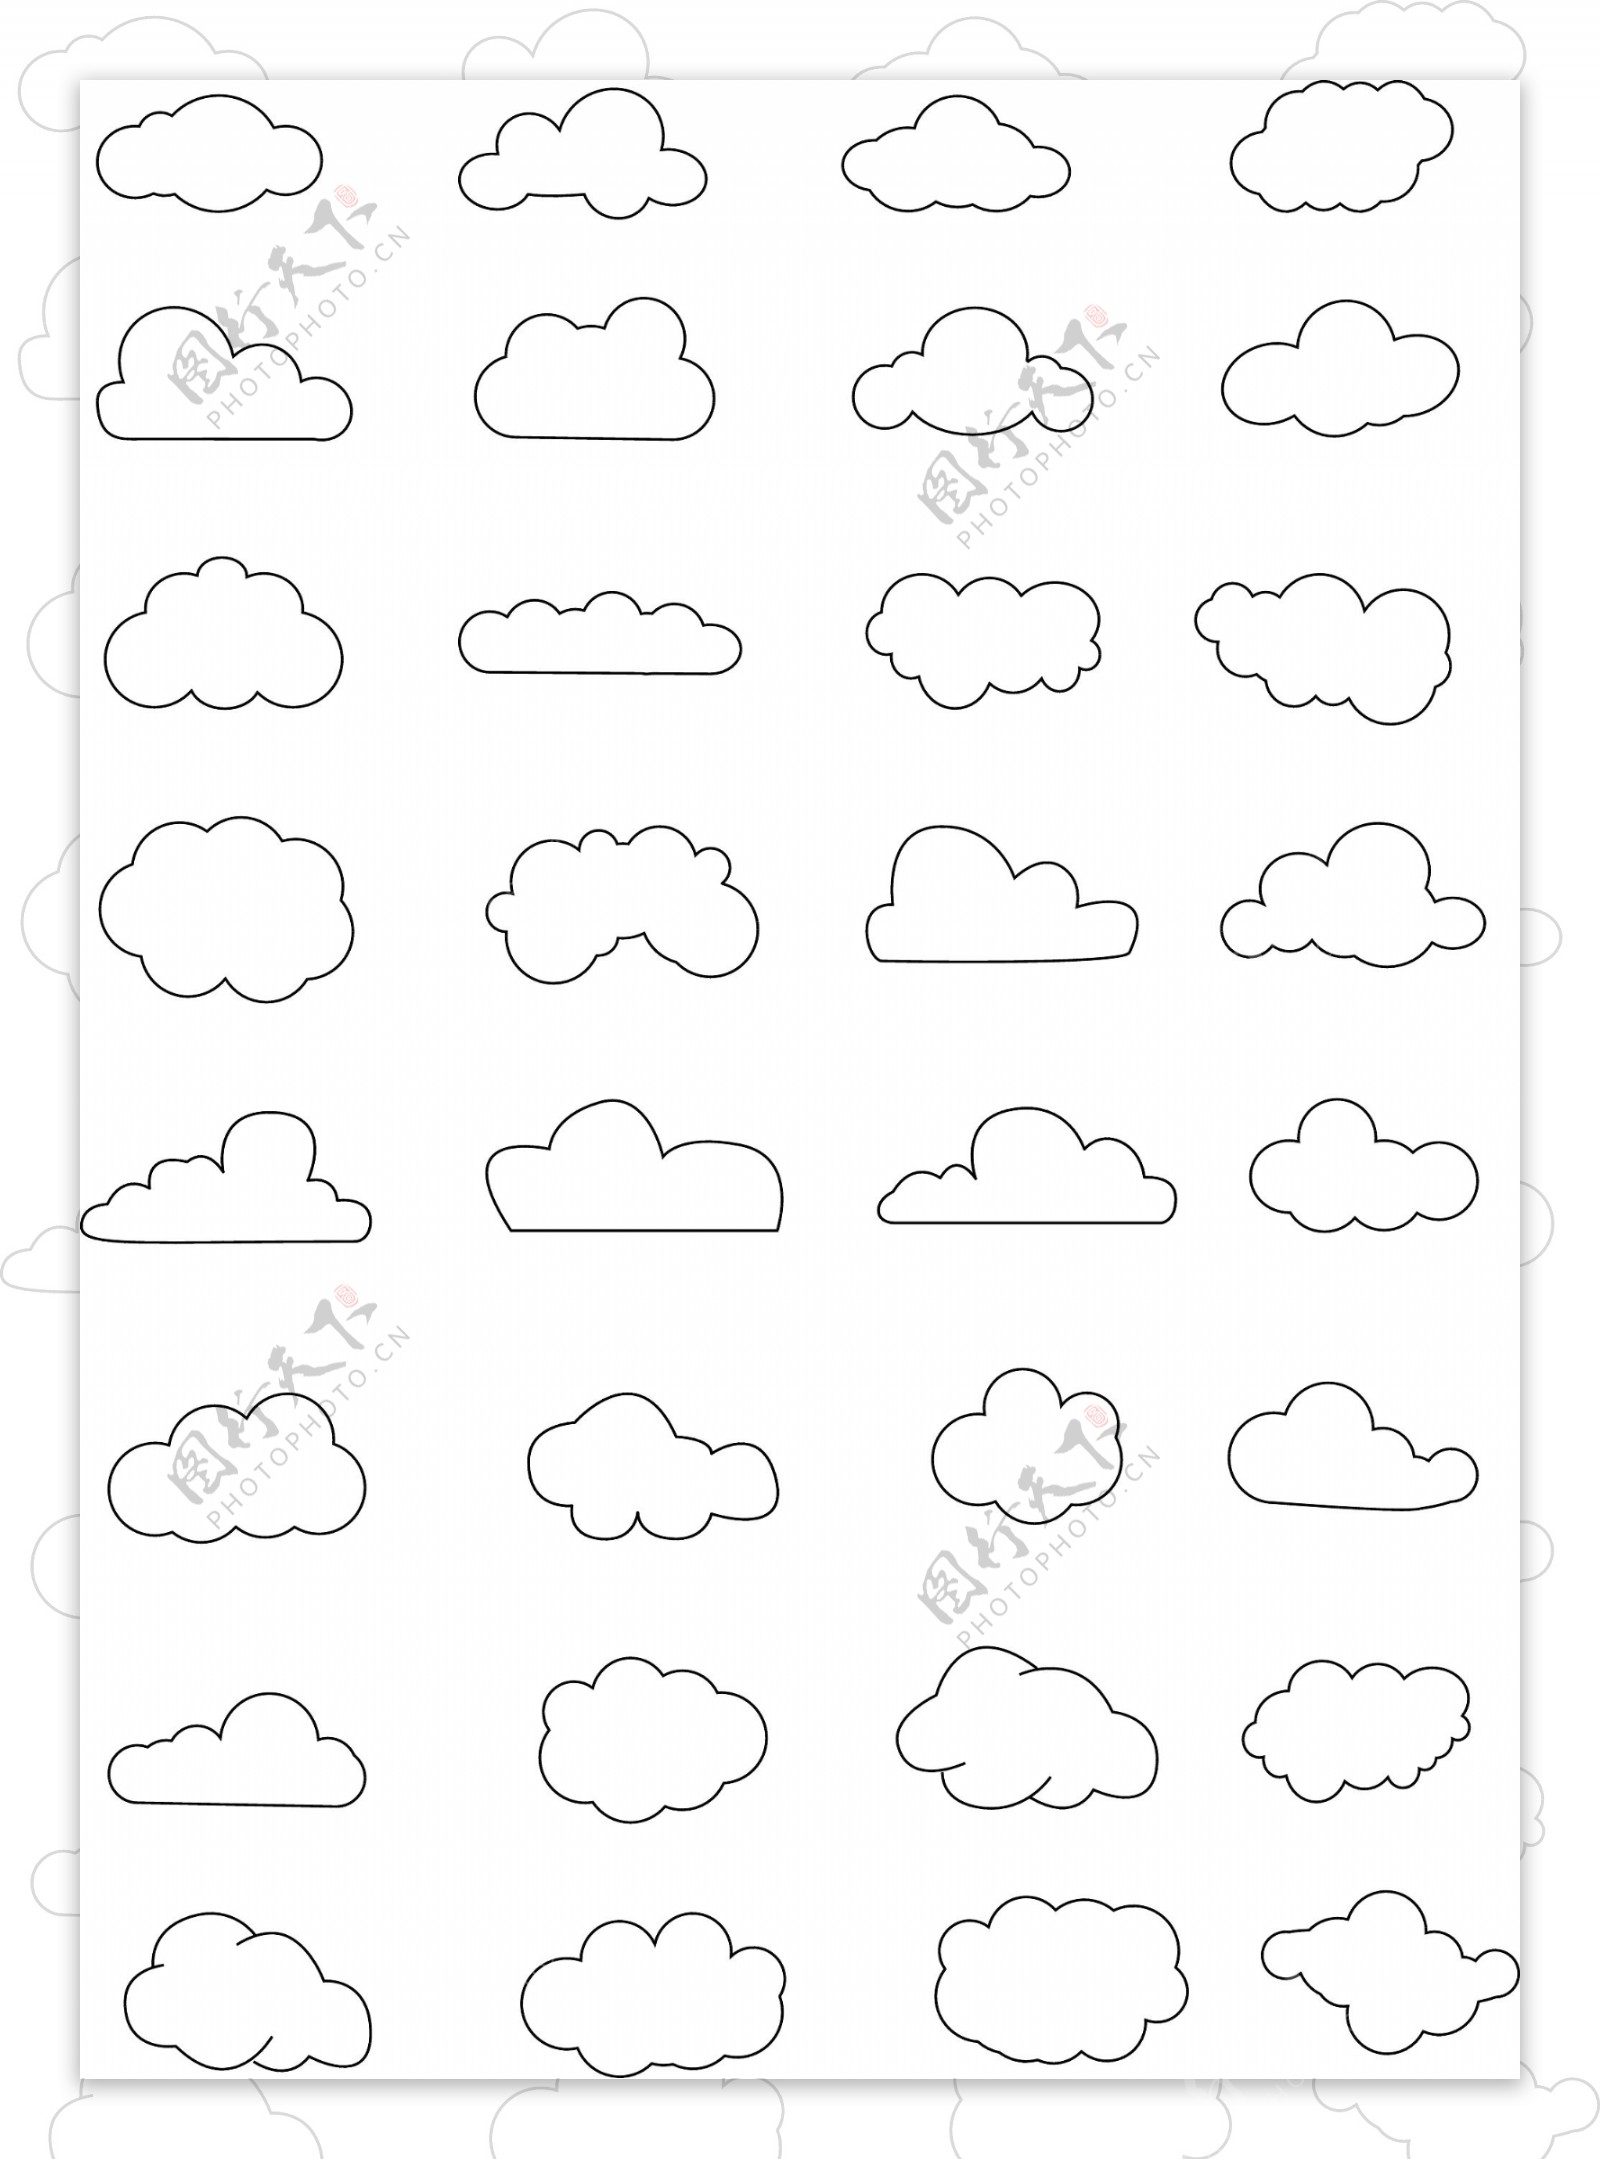 云朵线条黑色卡通手绘简笔画图形